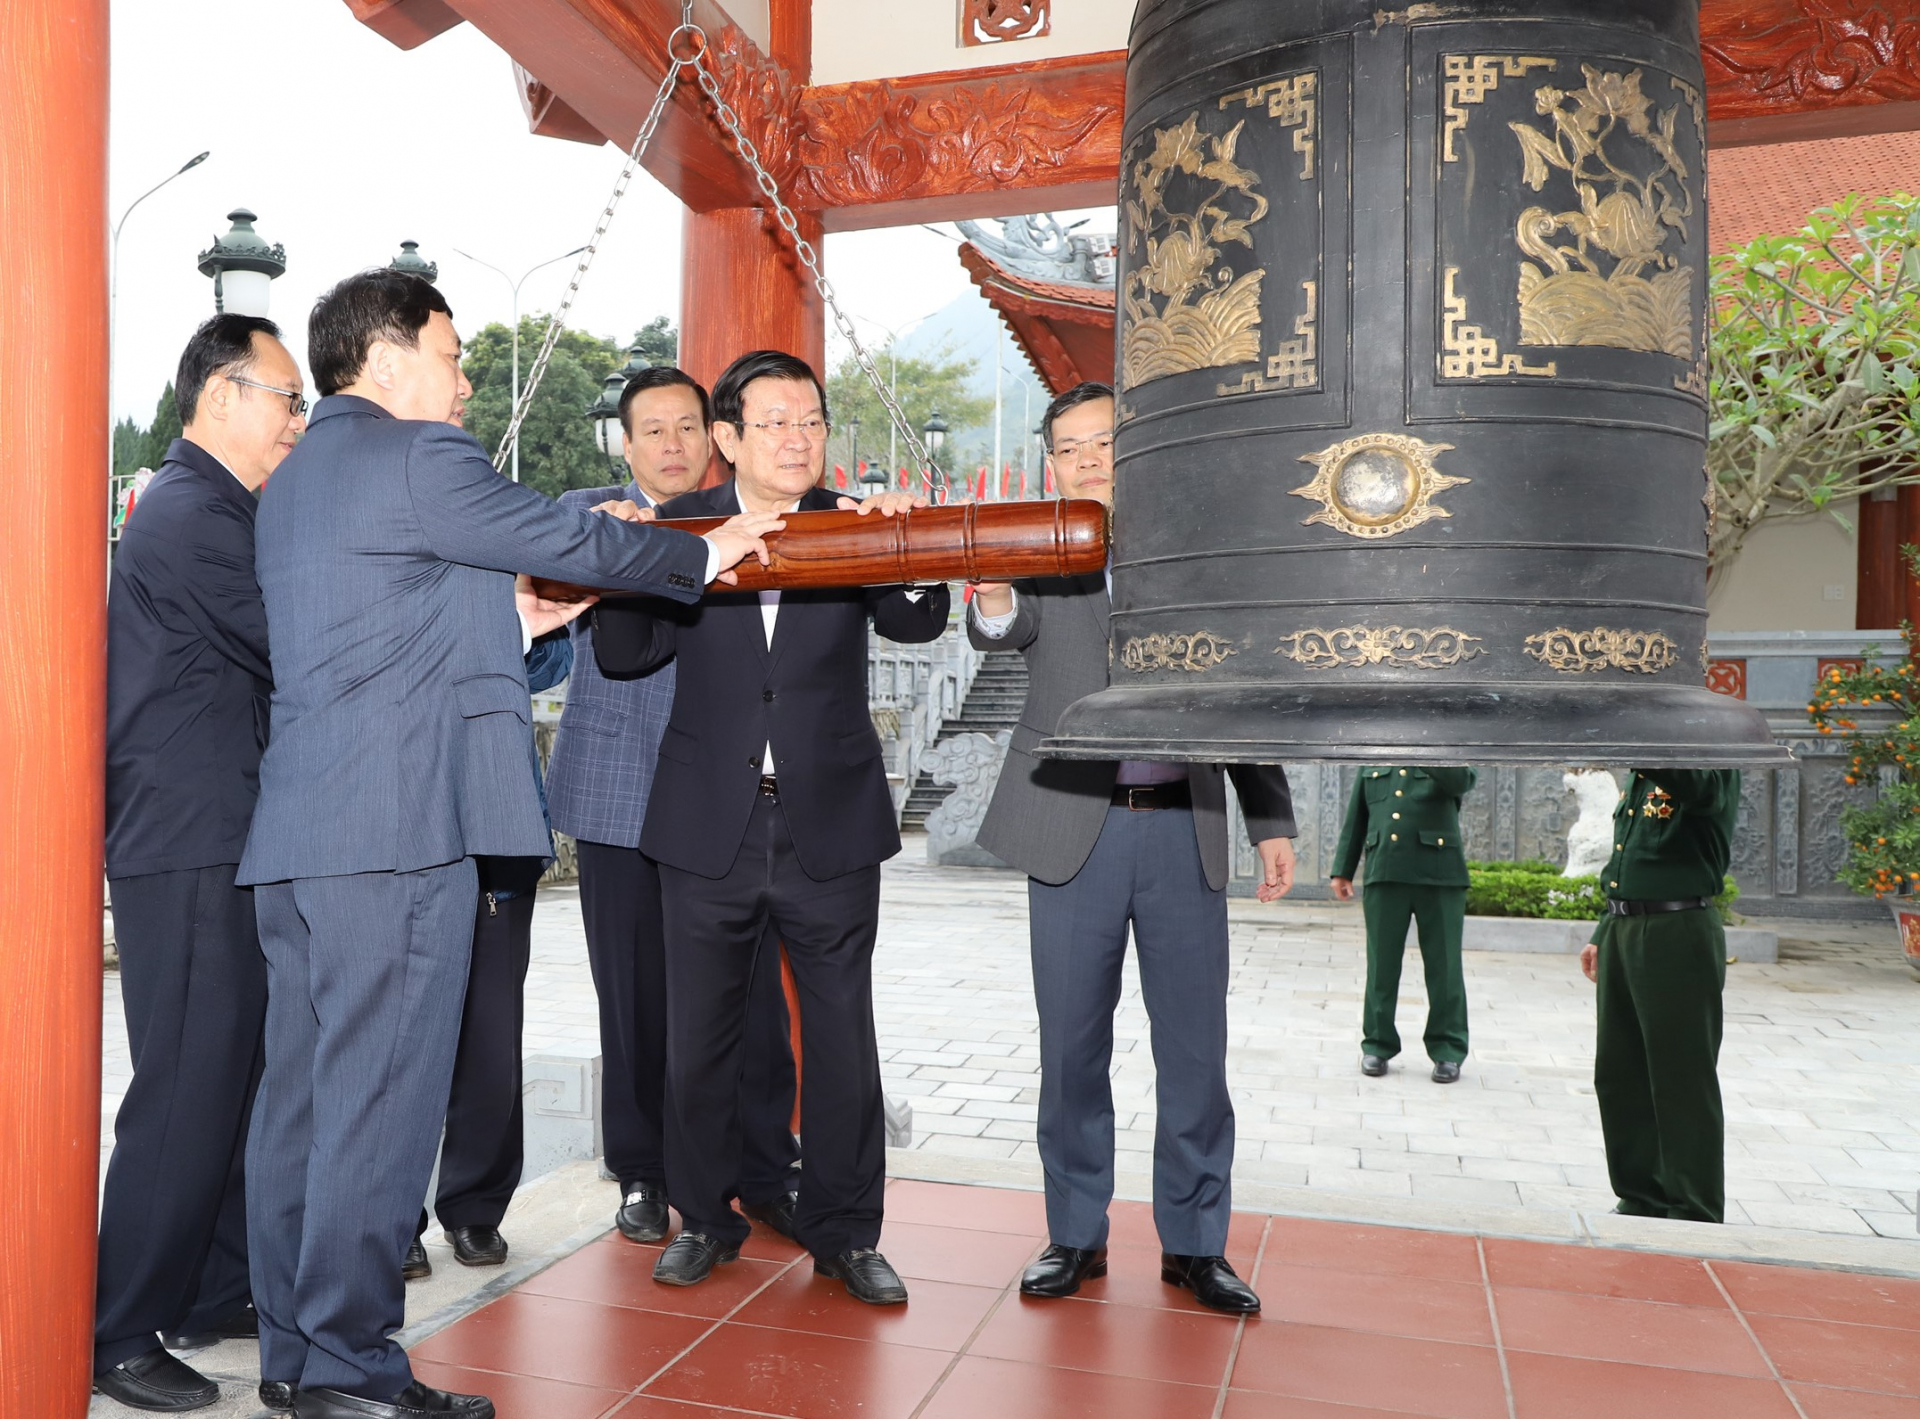 Nguyên Chủ tịch nước Trương Tấn Sang cùng các đồng chí lãnh đạo tỉnh thỉnh chuông